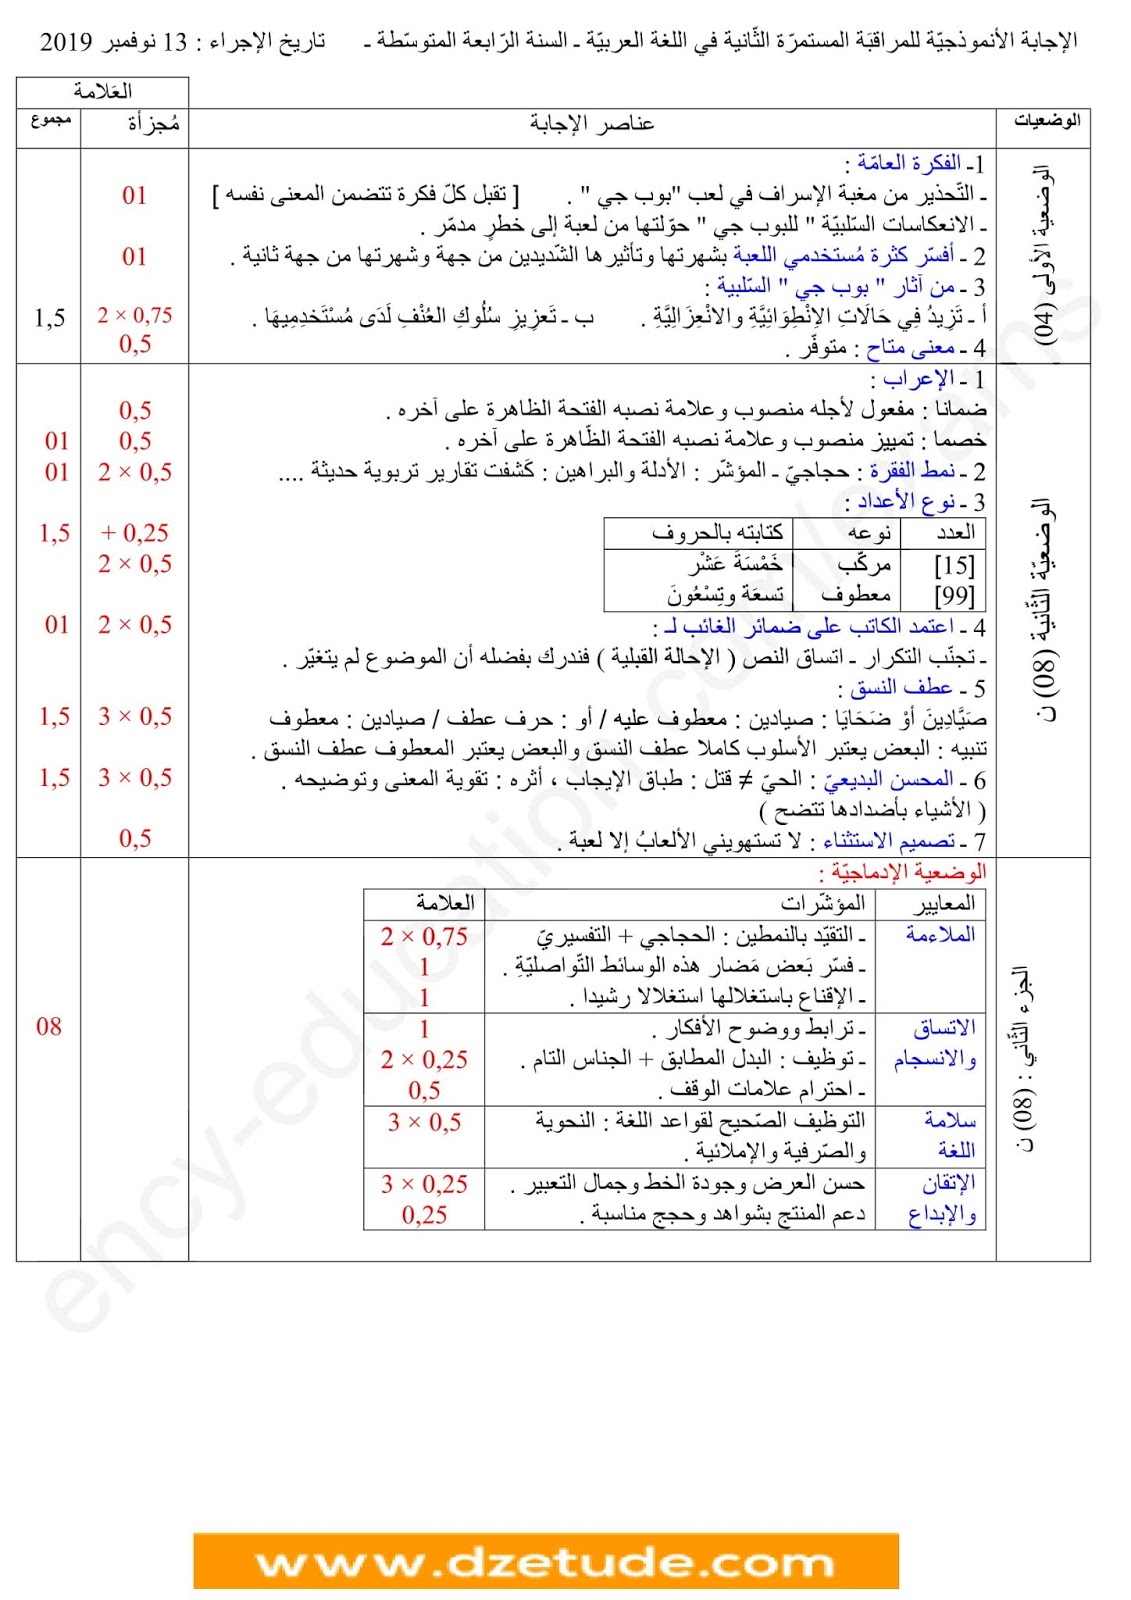 فرض الفصل الأول في اللغة العربية للسنة الرابعة متوسط - الجيل الثاني نموذج 2